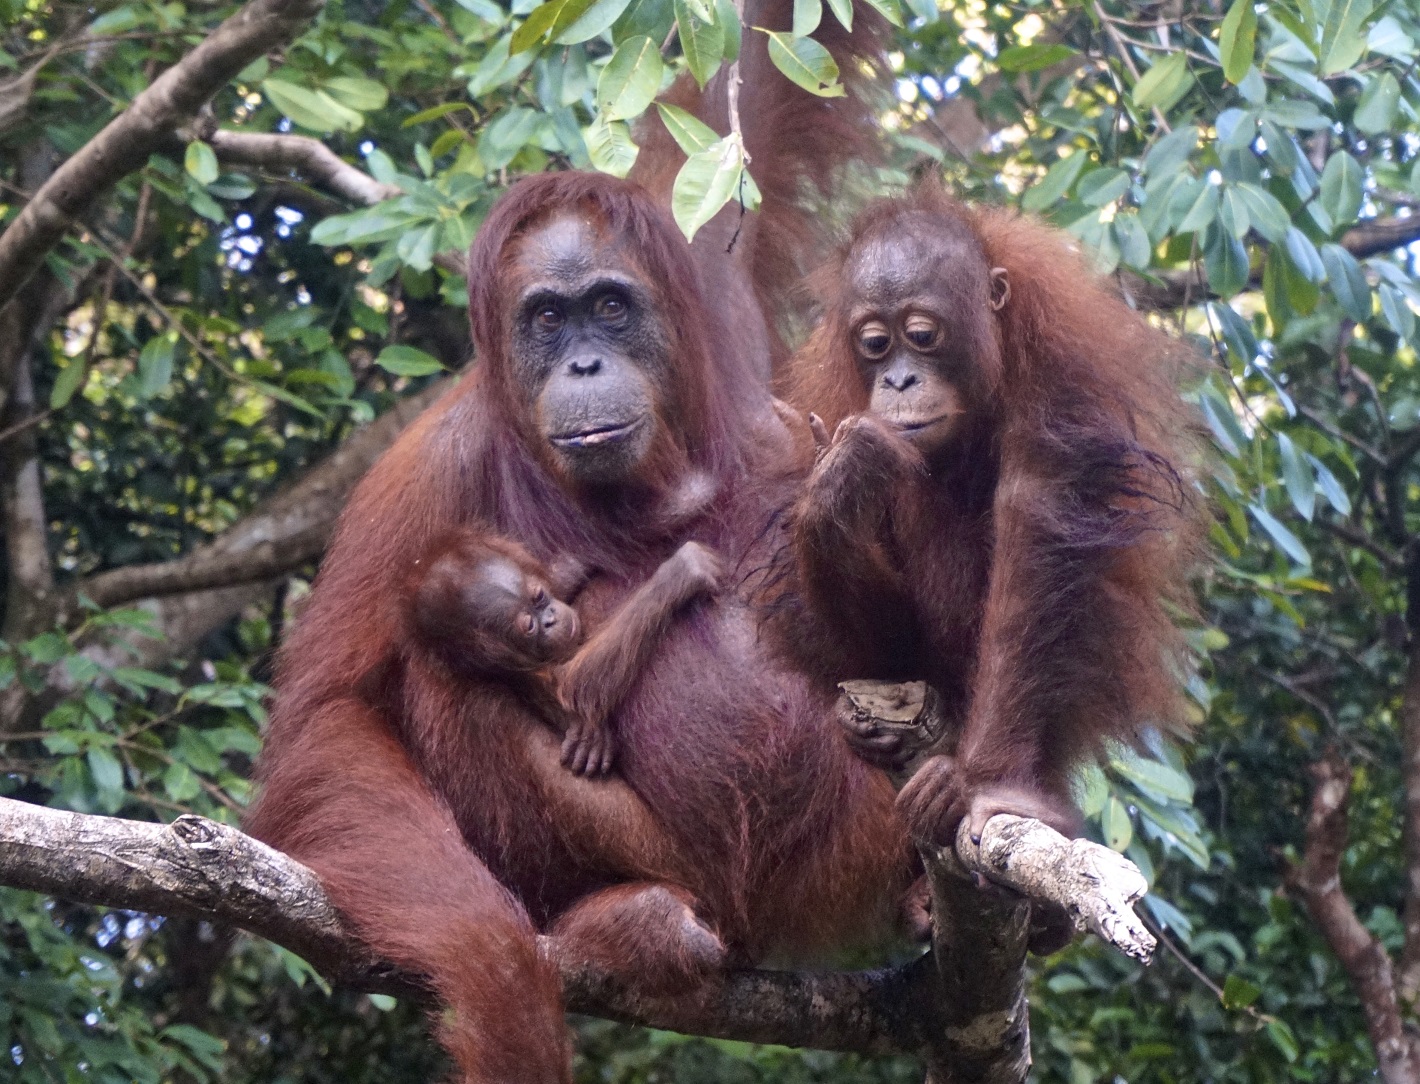 Paula with infant Paul and Rawit, 2017. Image© Orangutan Foundation.